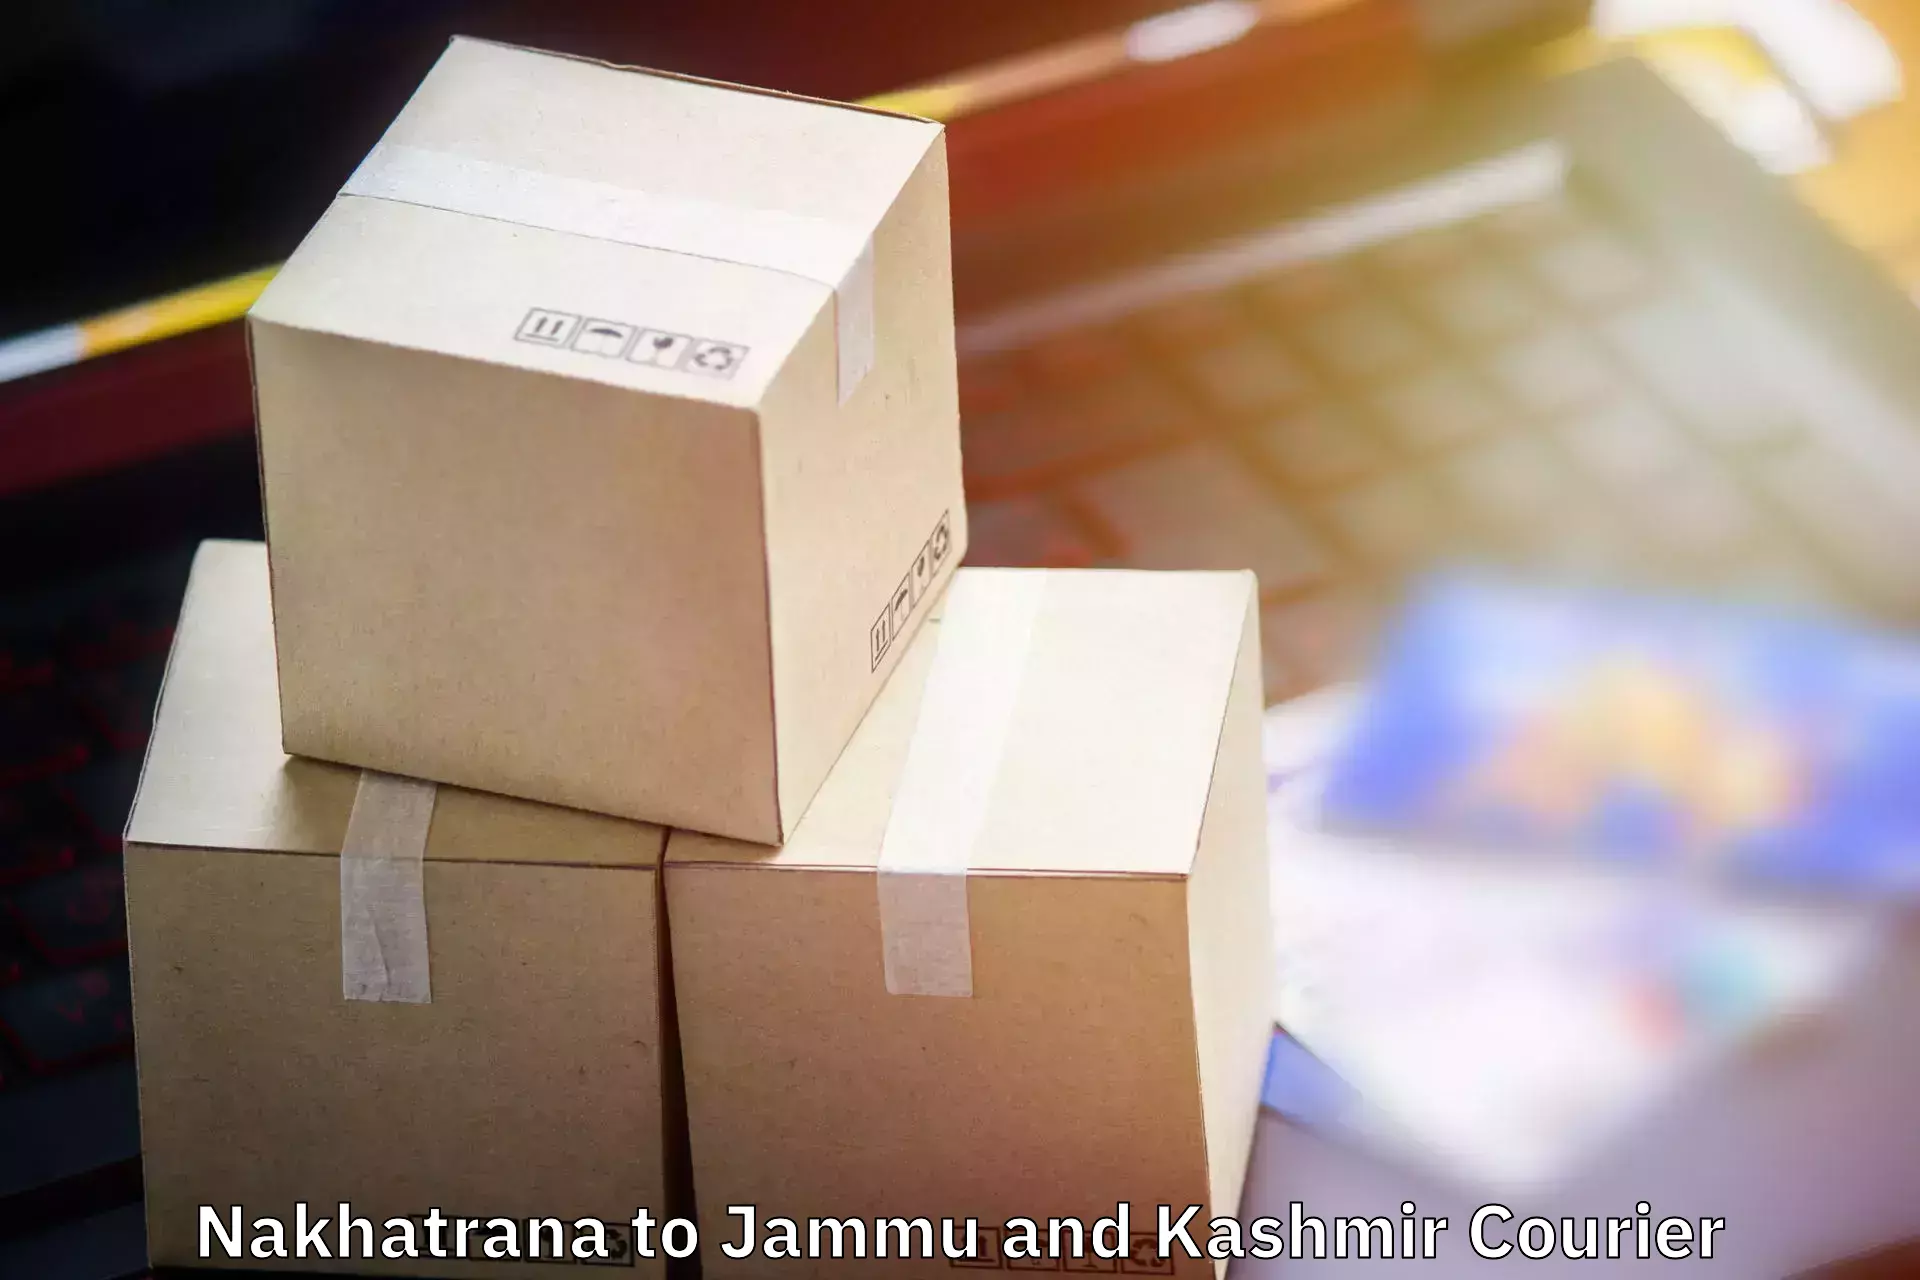 Luggage delivery providers Nakhatrana to Katra